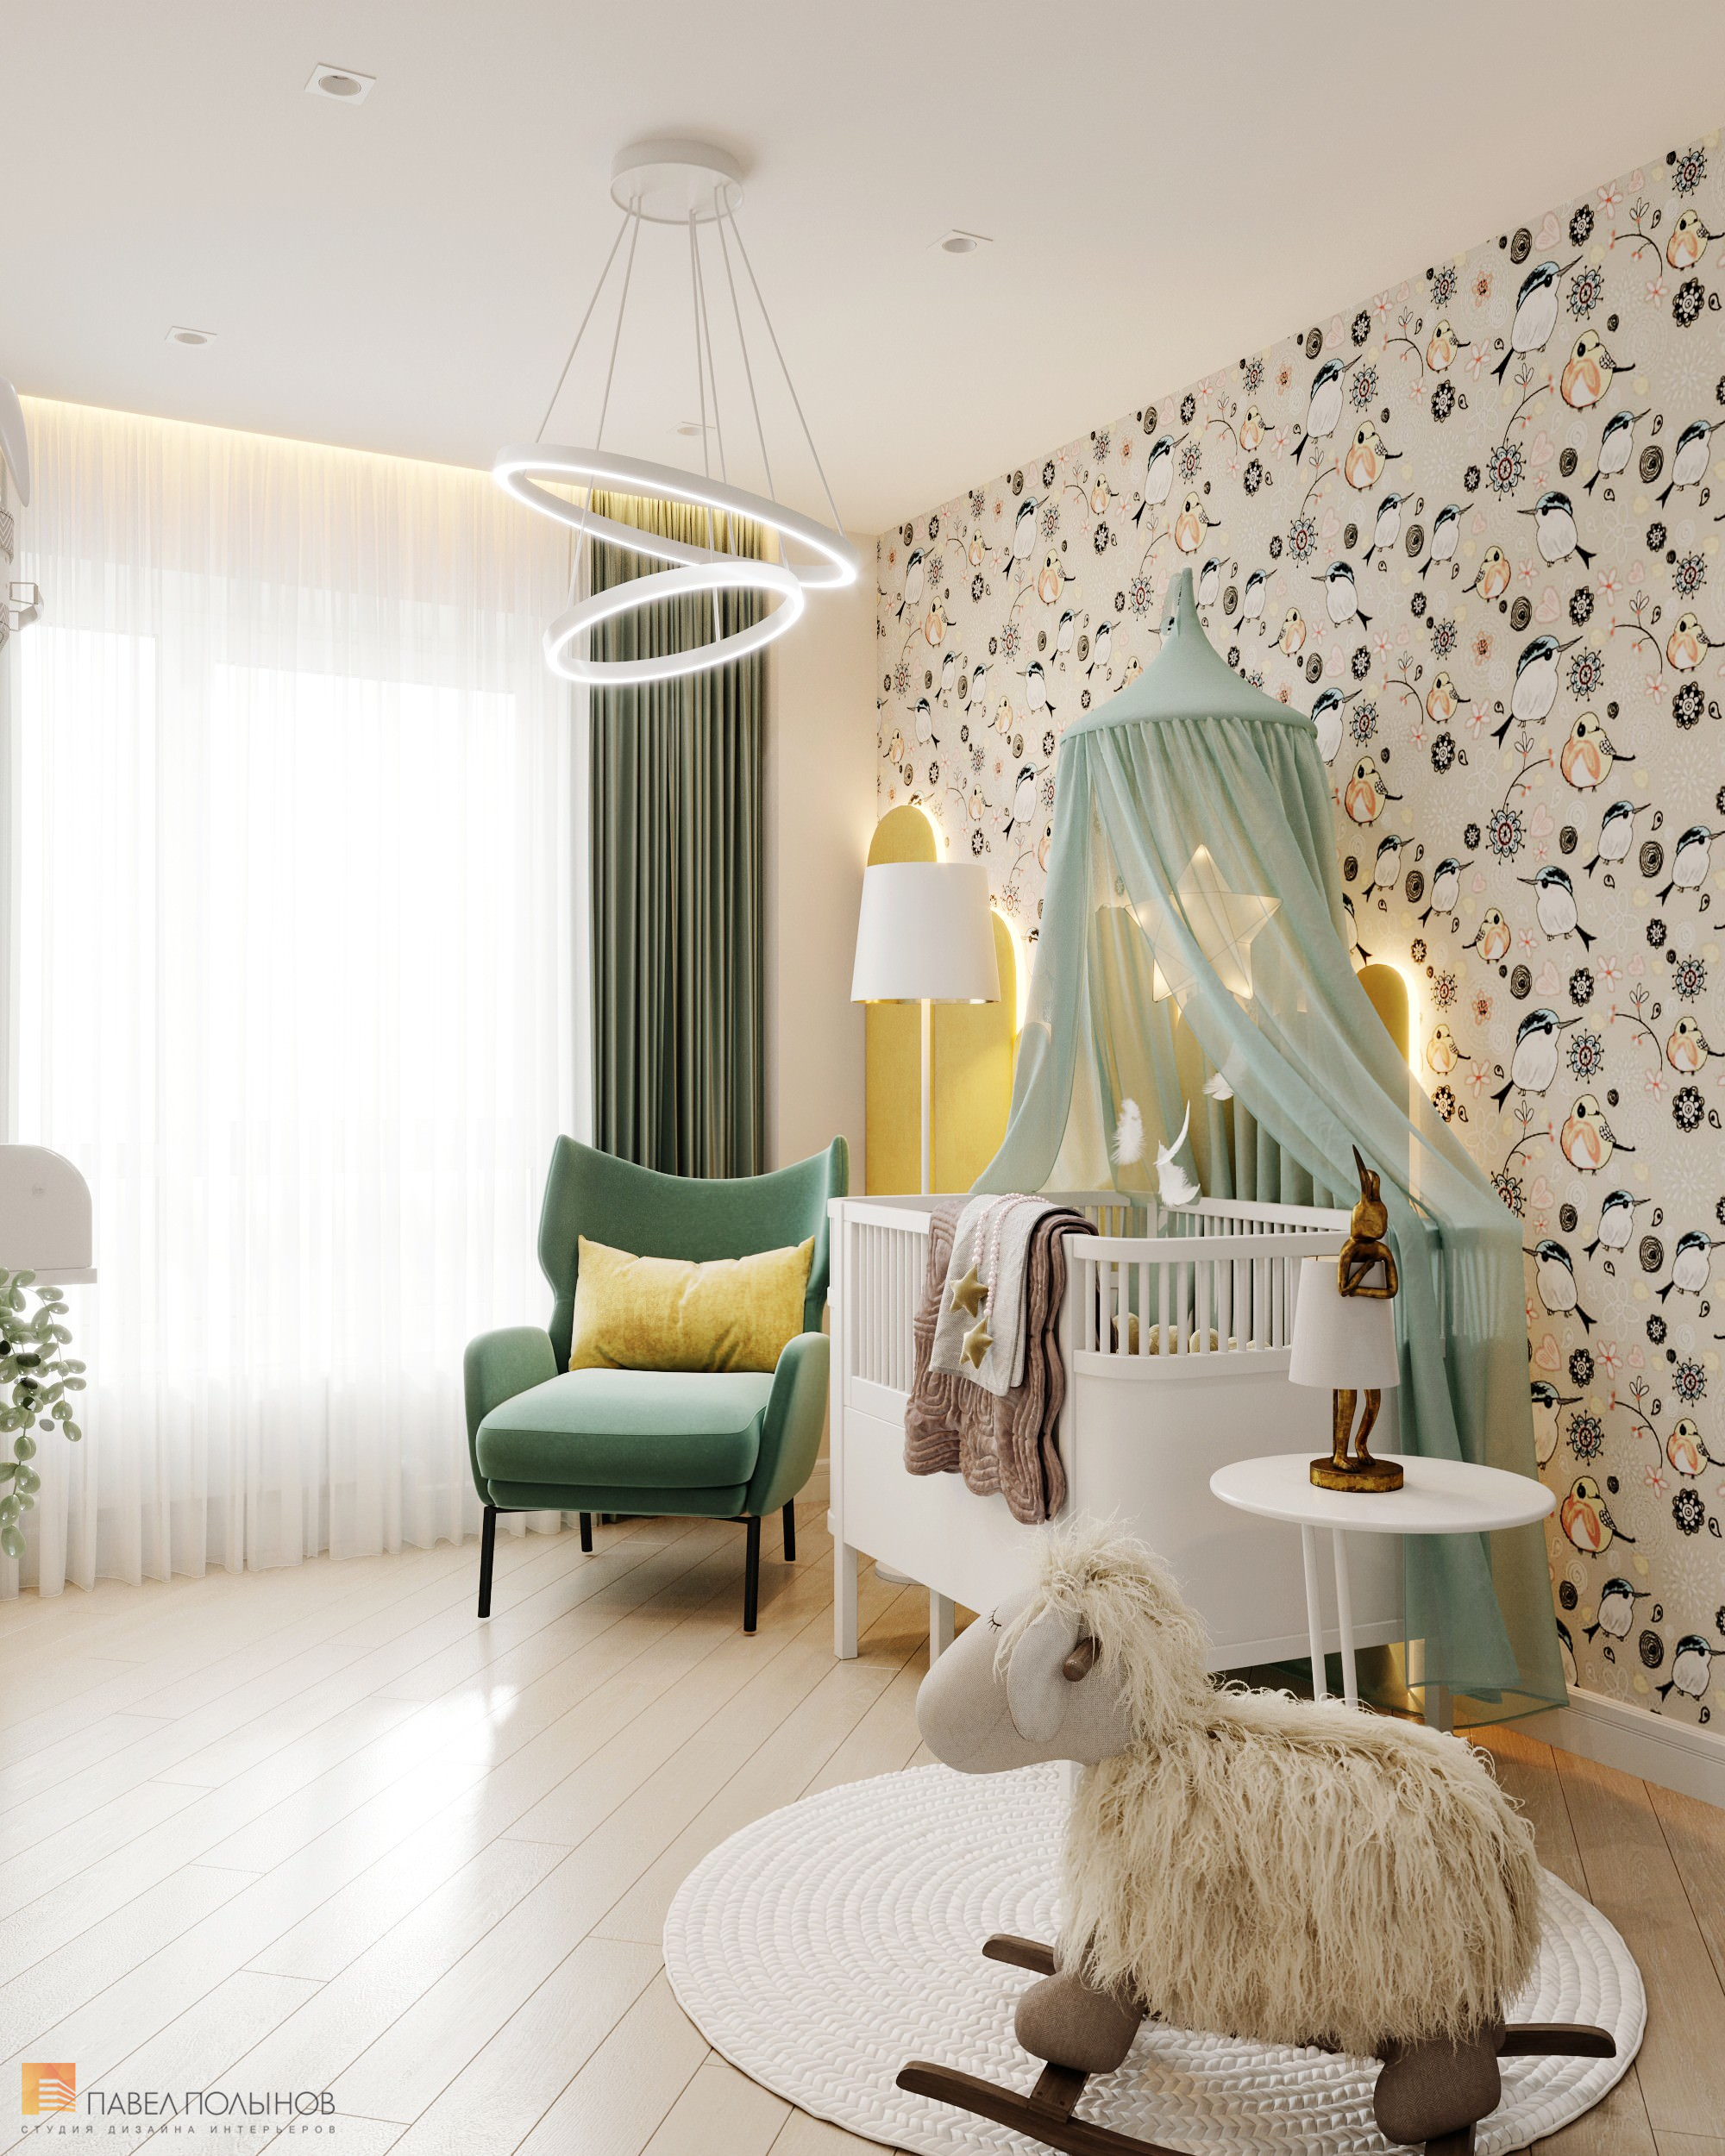 Фото детская комната из проекта «Квартира в современном стиле, ЖК «Аннино парк», 54 кв.м.»